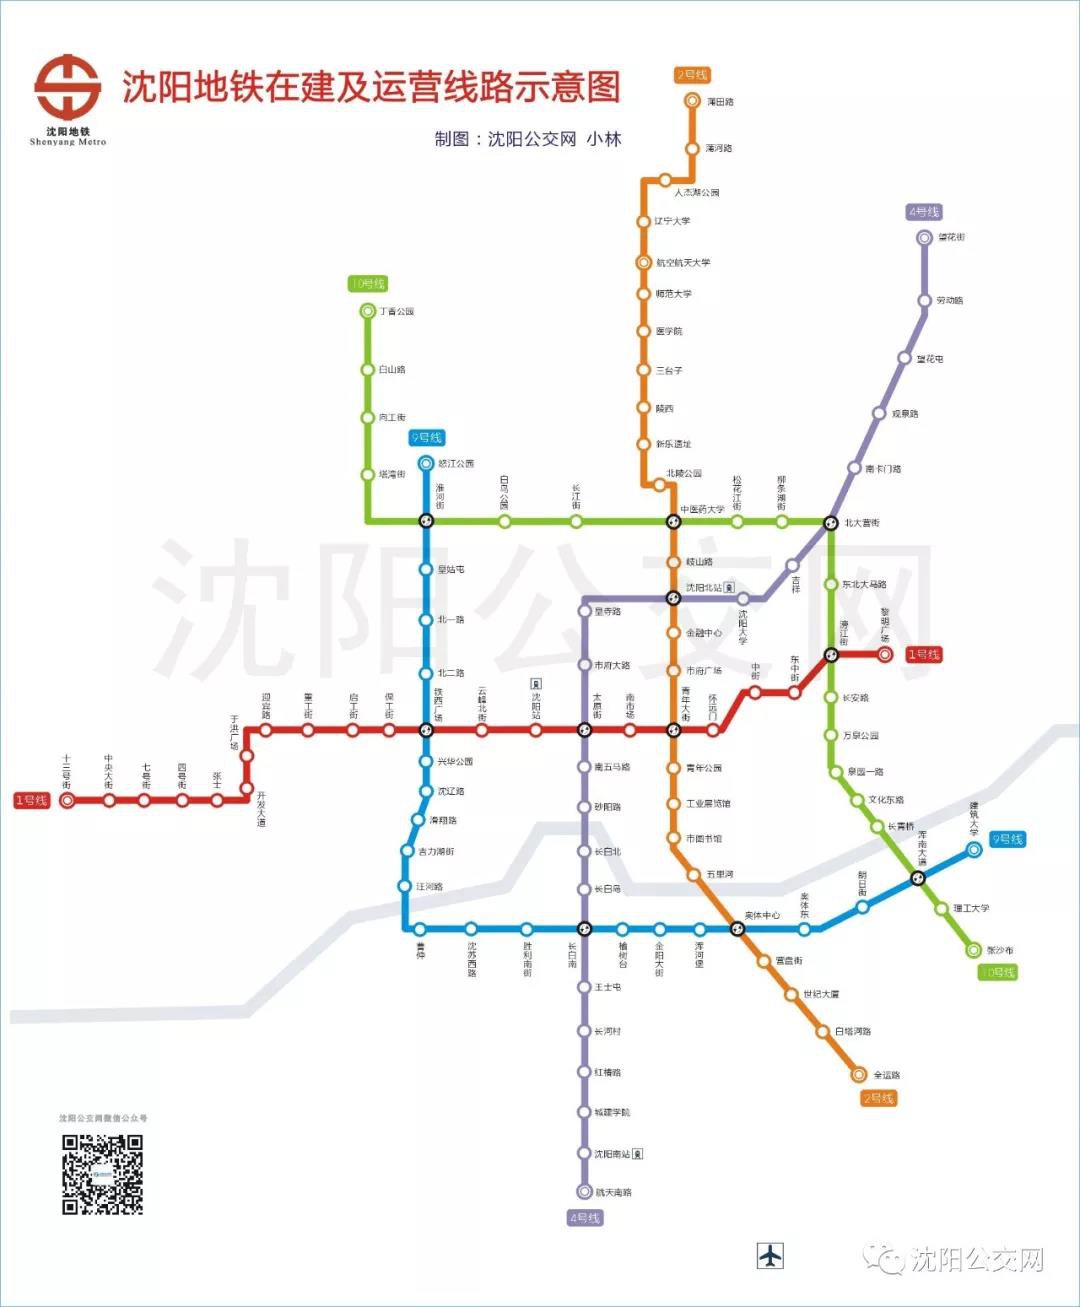 沈阳地铁在建及运营路线示意图清晰大图